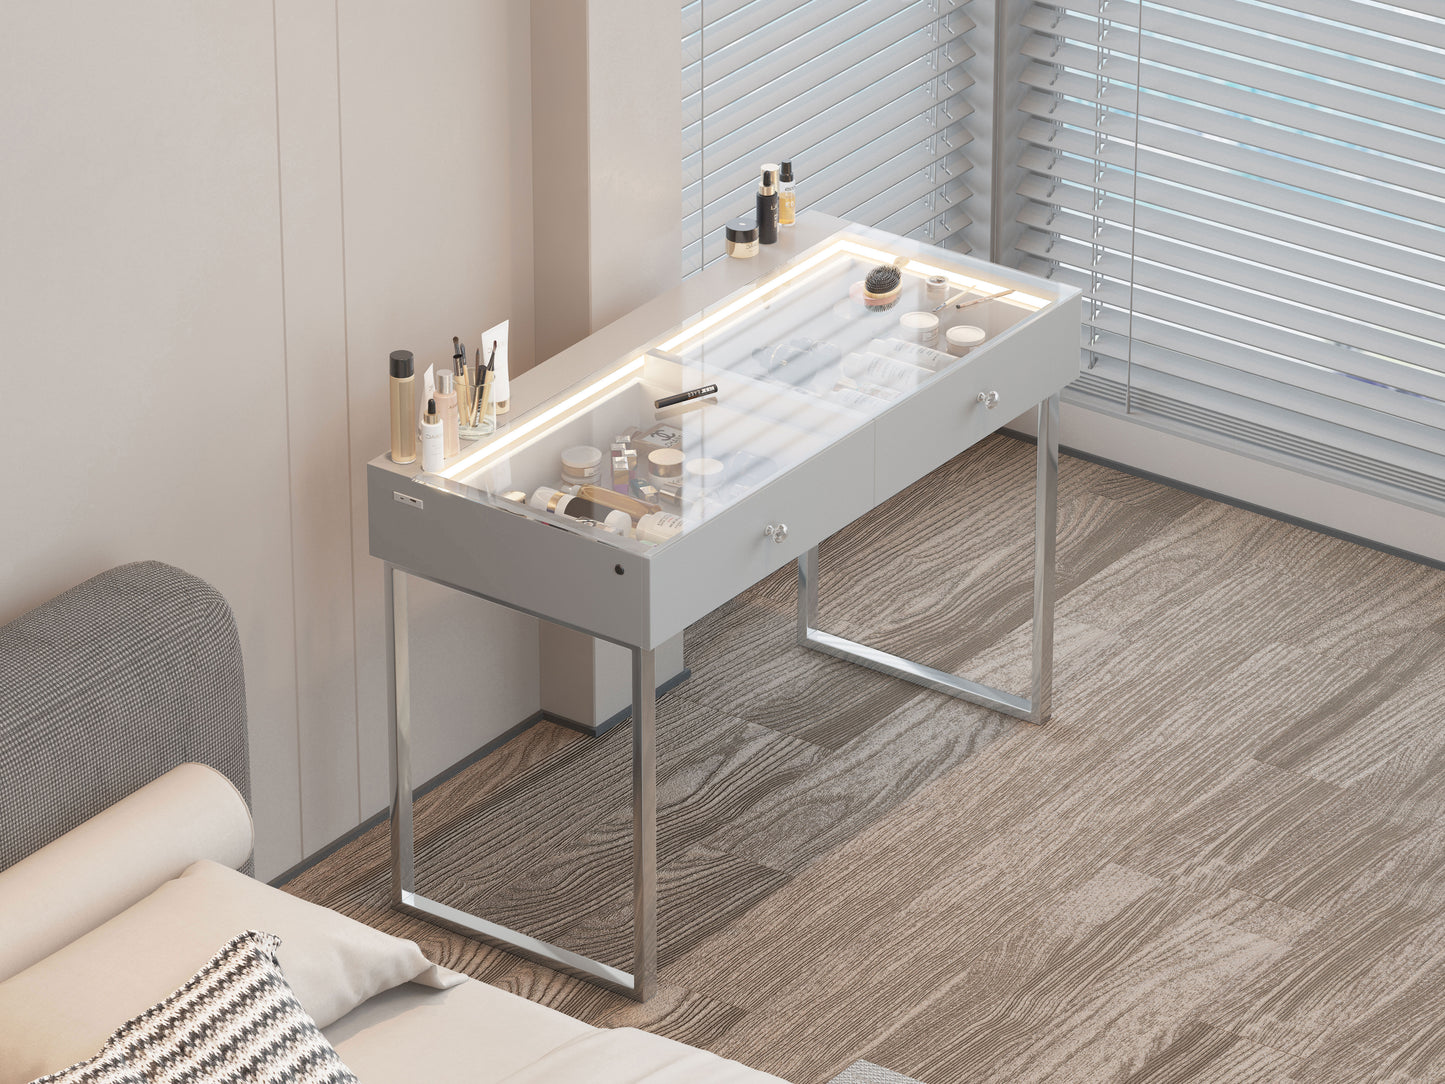 Makeup vanity desk with 2 storage drawers